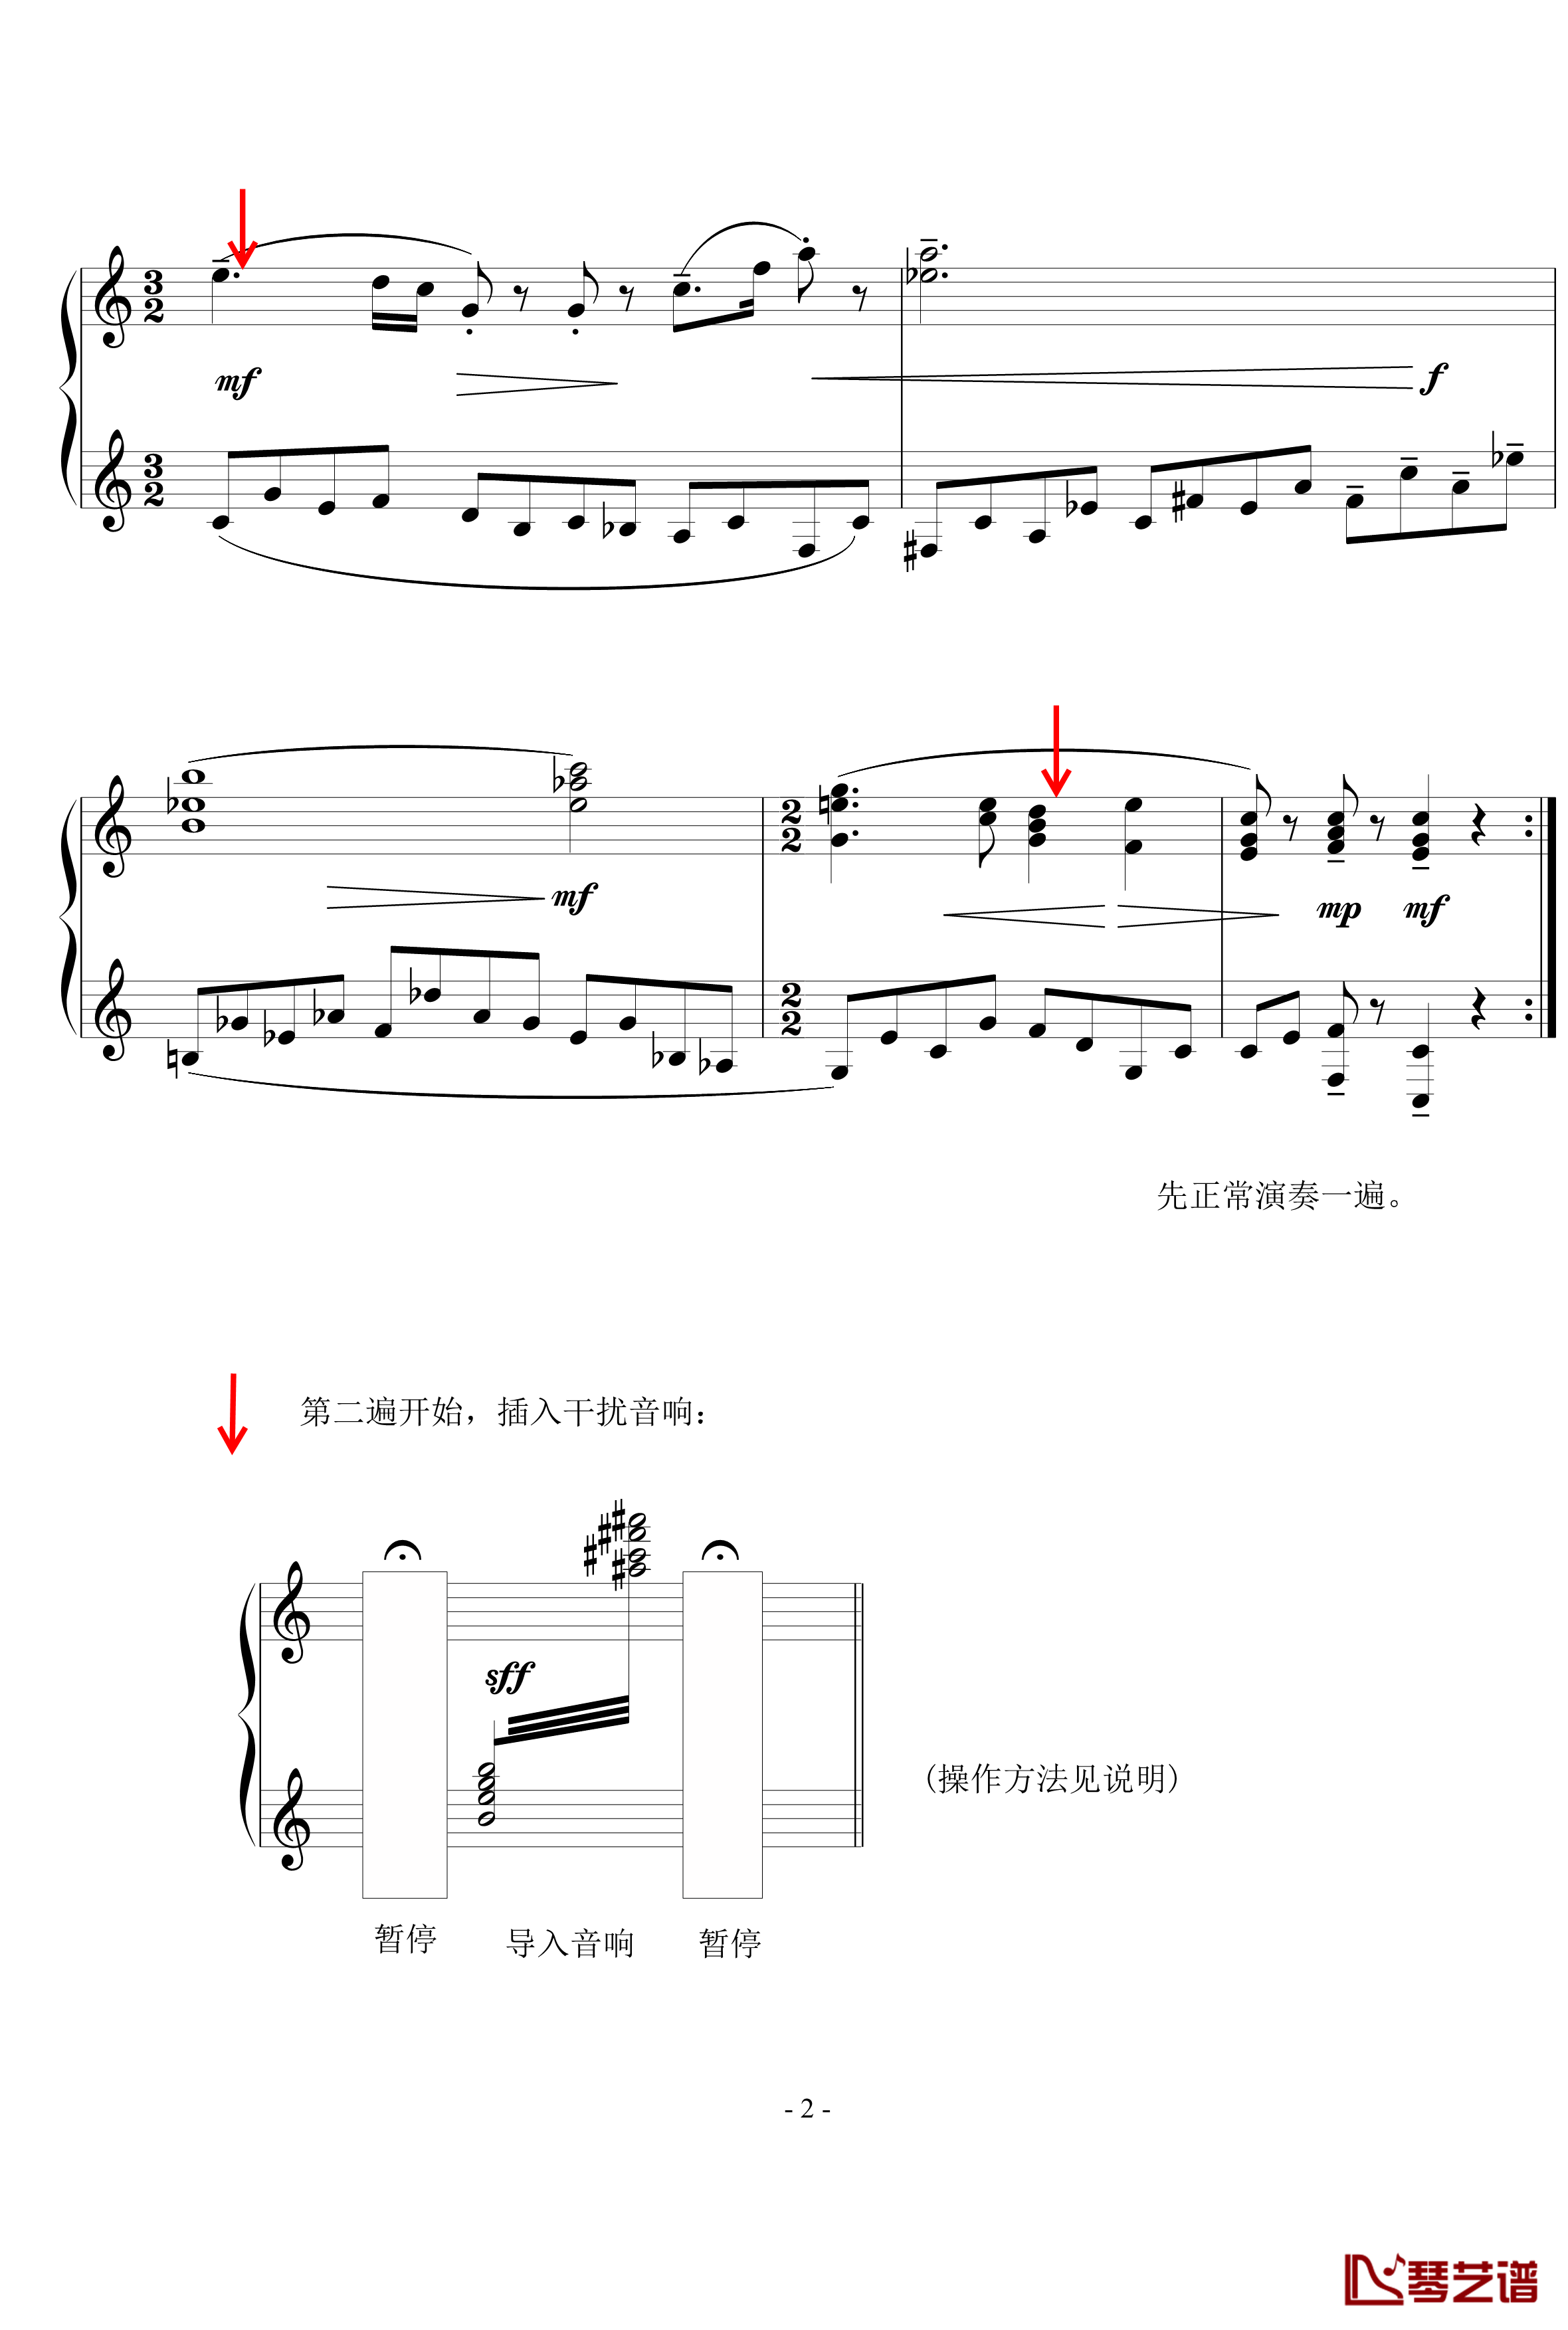 信息干扰实验钢琴谱-陈文戈2